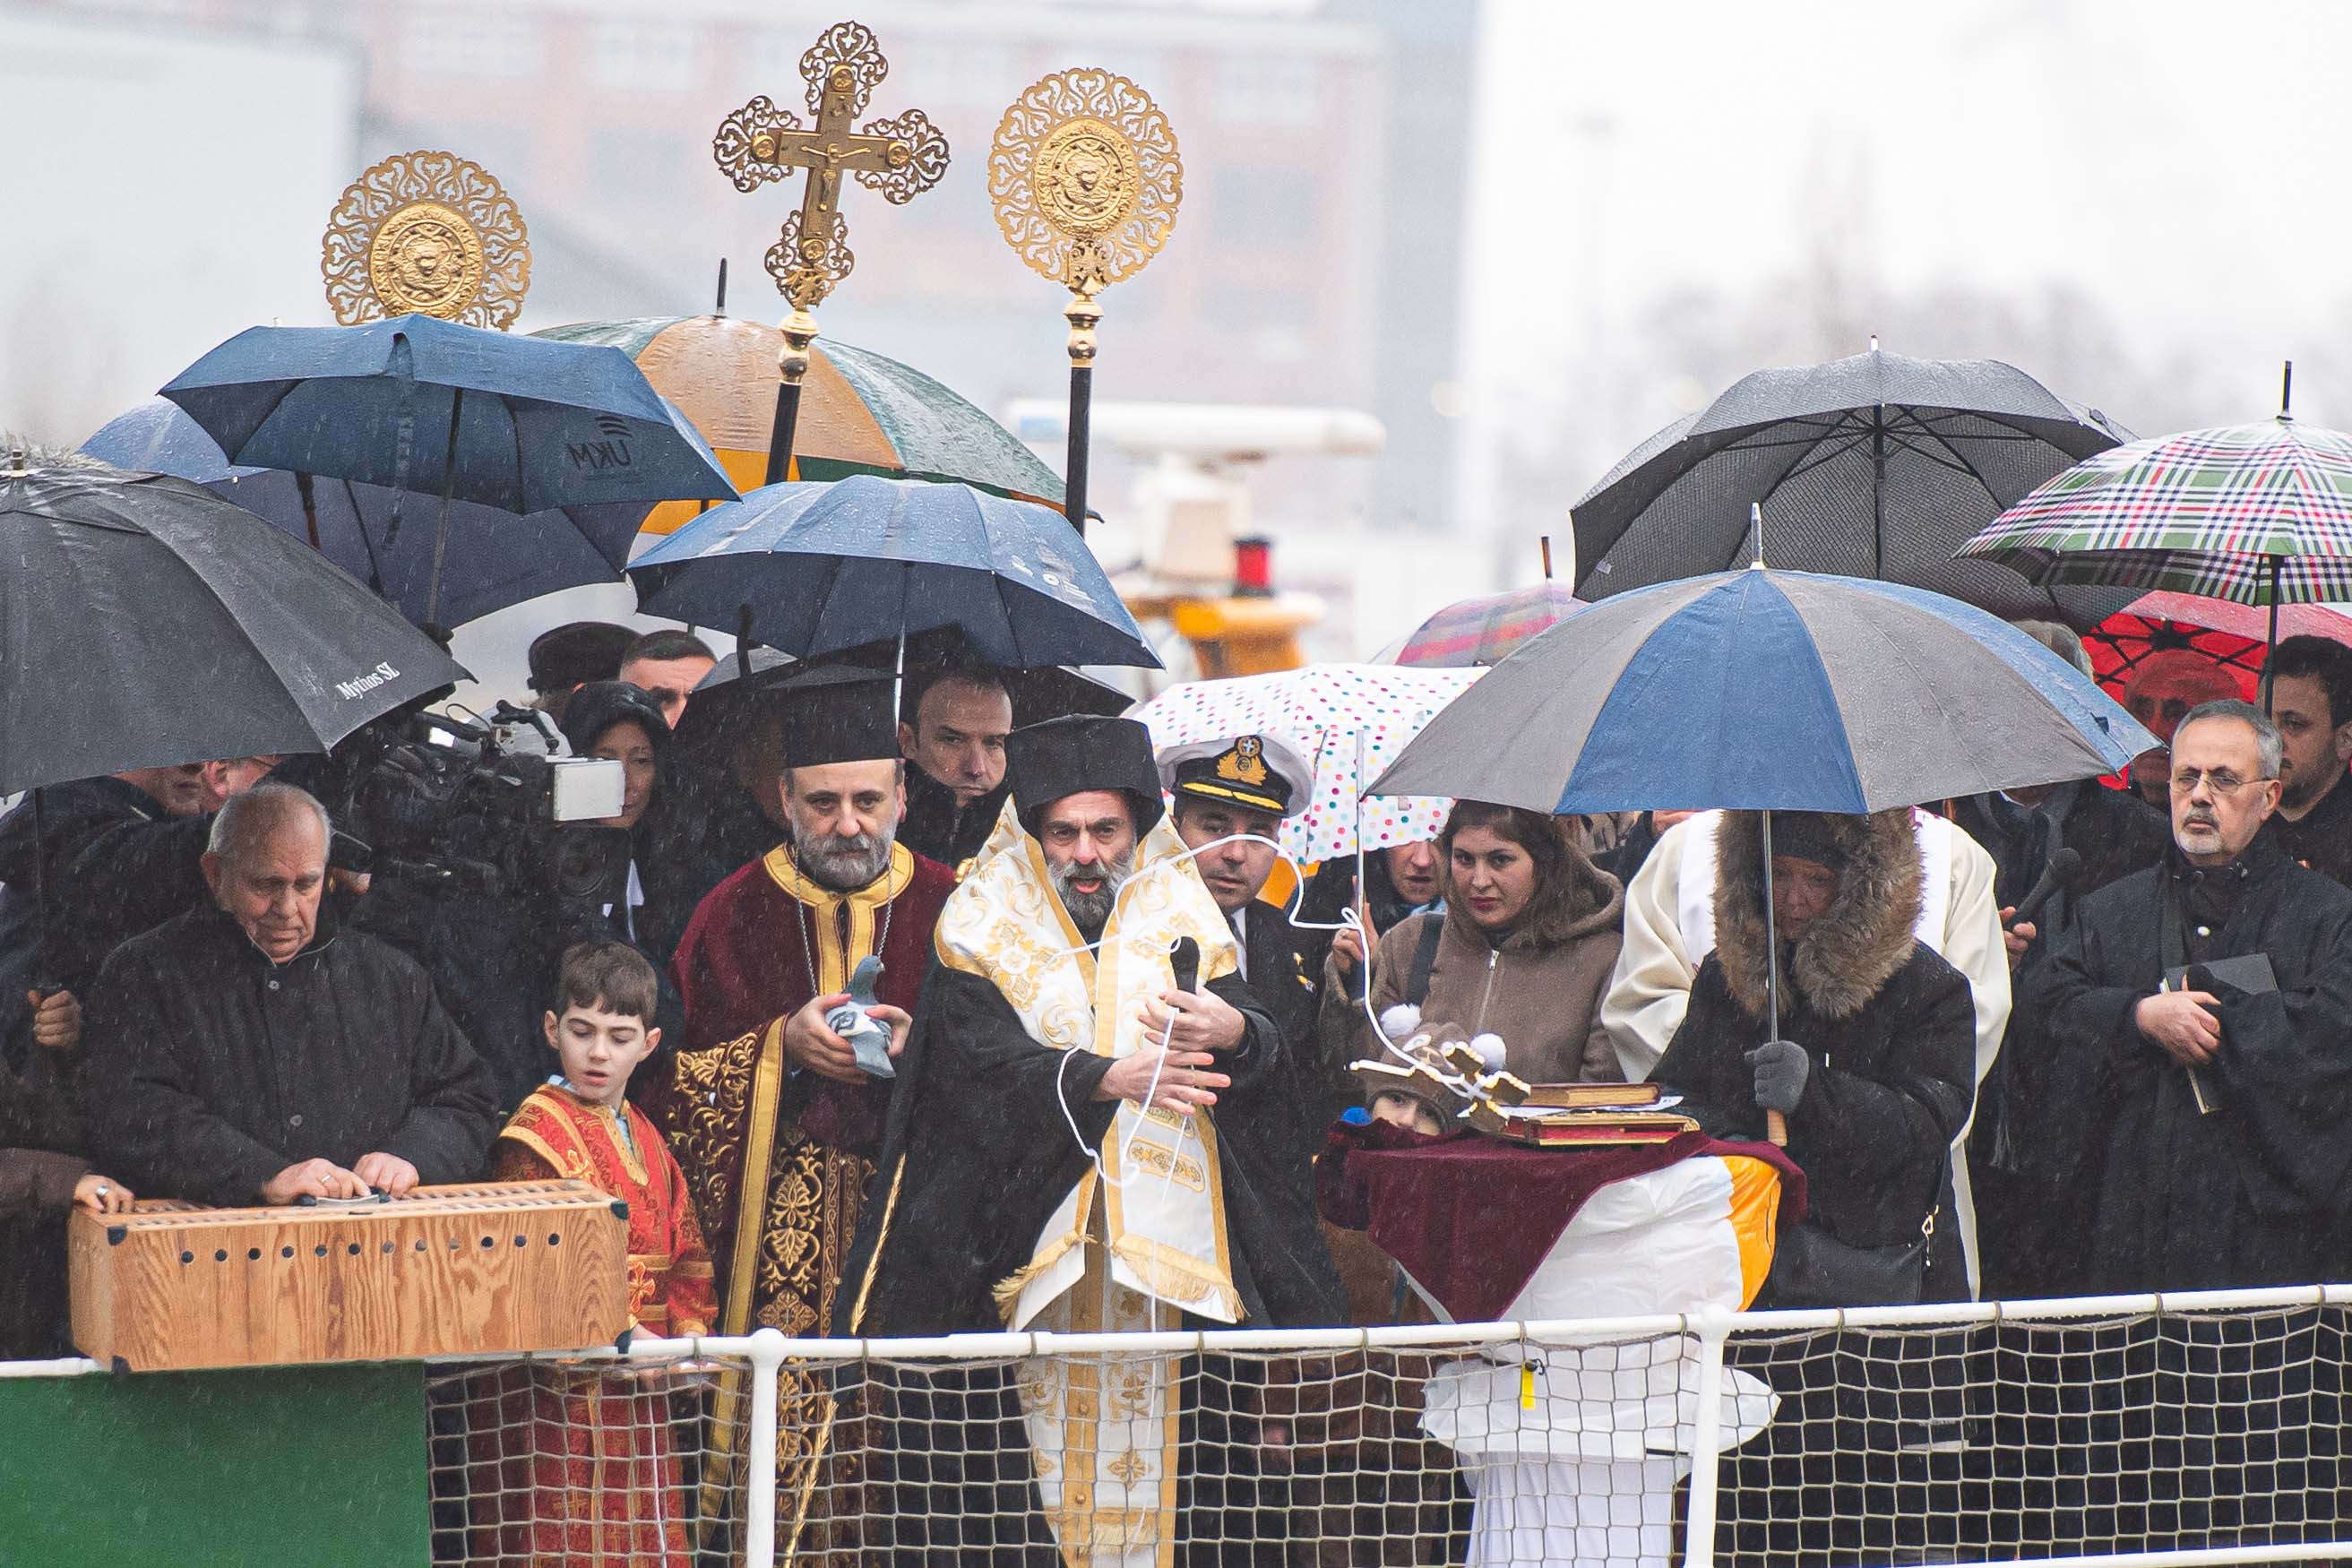 Grieschisch-orthodoxer Bischof segnet an Bord eines Schiffs das Wasser der Elbe, umringt von Menschen mit Regenschirmen.